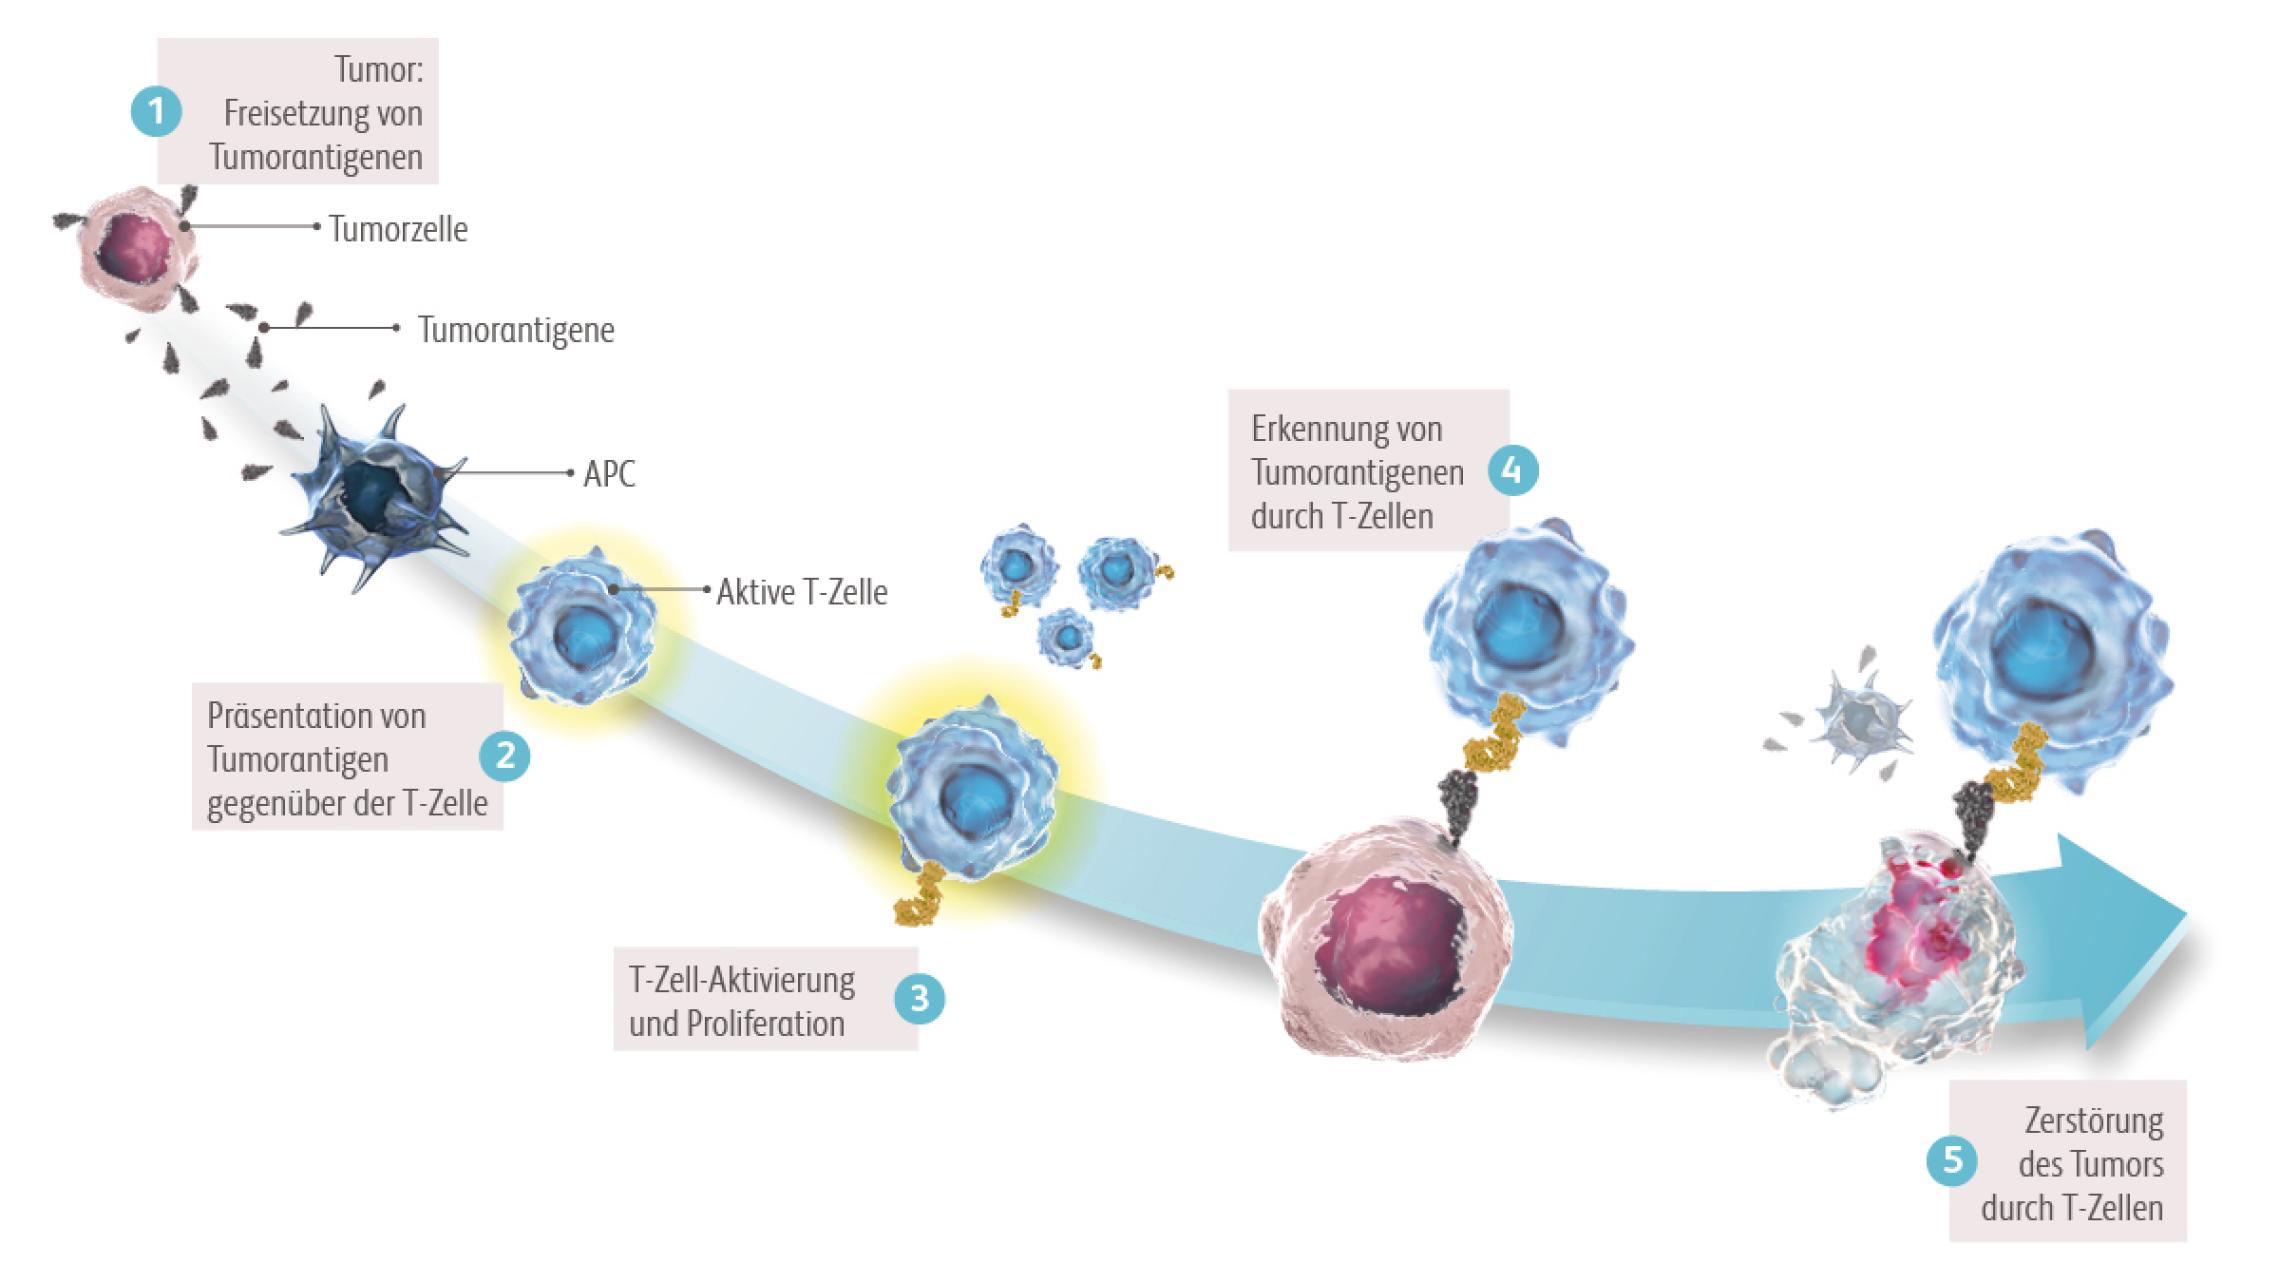 Mit Hilfe von B- und T-Zellen kann das Immunsystem Krebszellen erkennen und zerstören. Tumorzellen tragen Antigene, die eine Immunantwort auslösen. Immunzellen erkennen diese Antigene als körperfremd und greifen die Tumorzelle an.